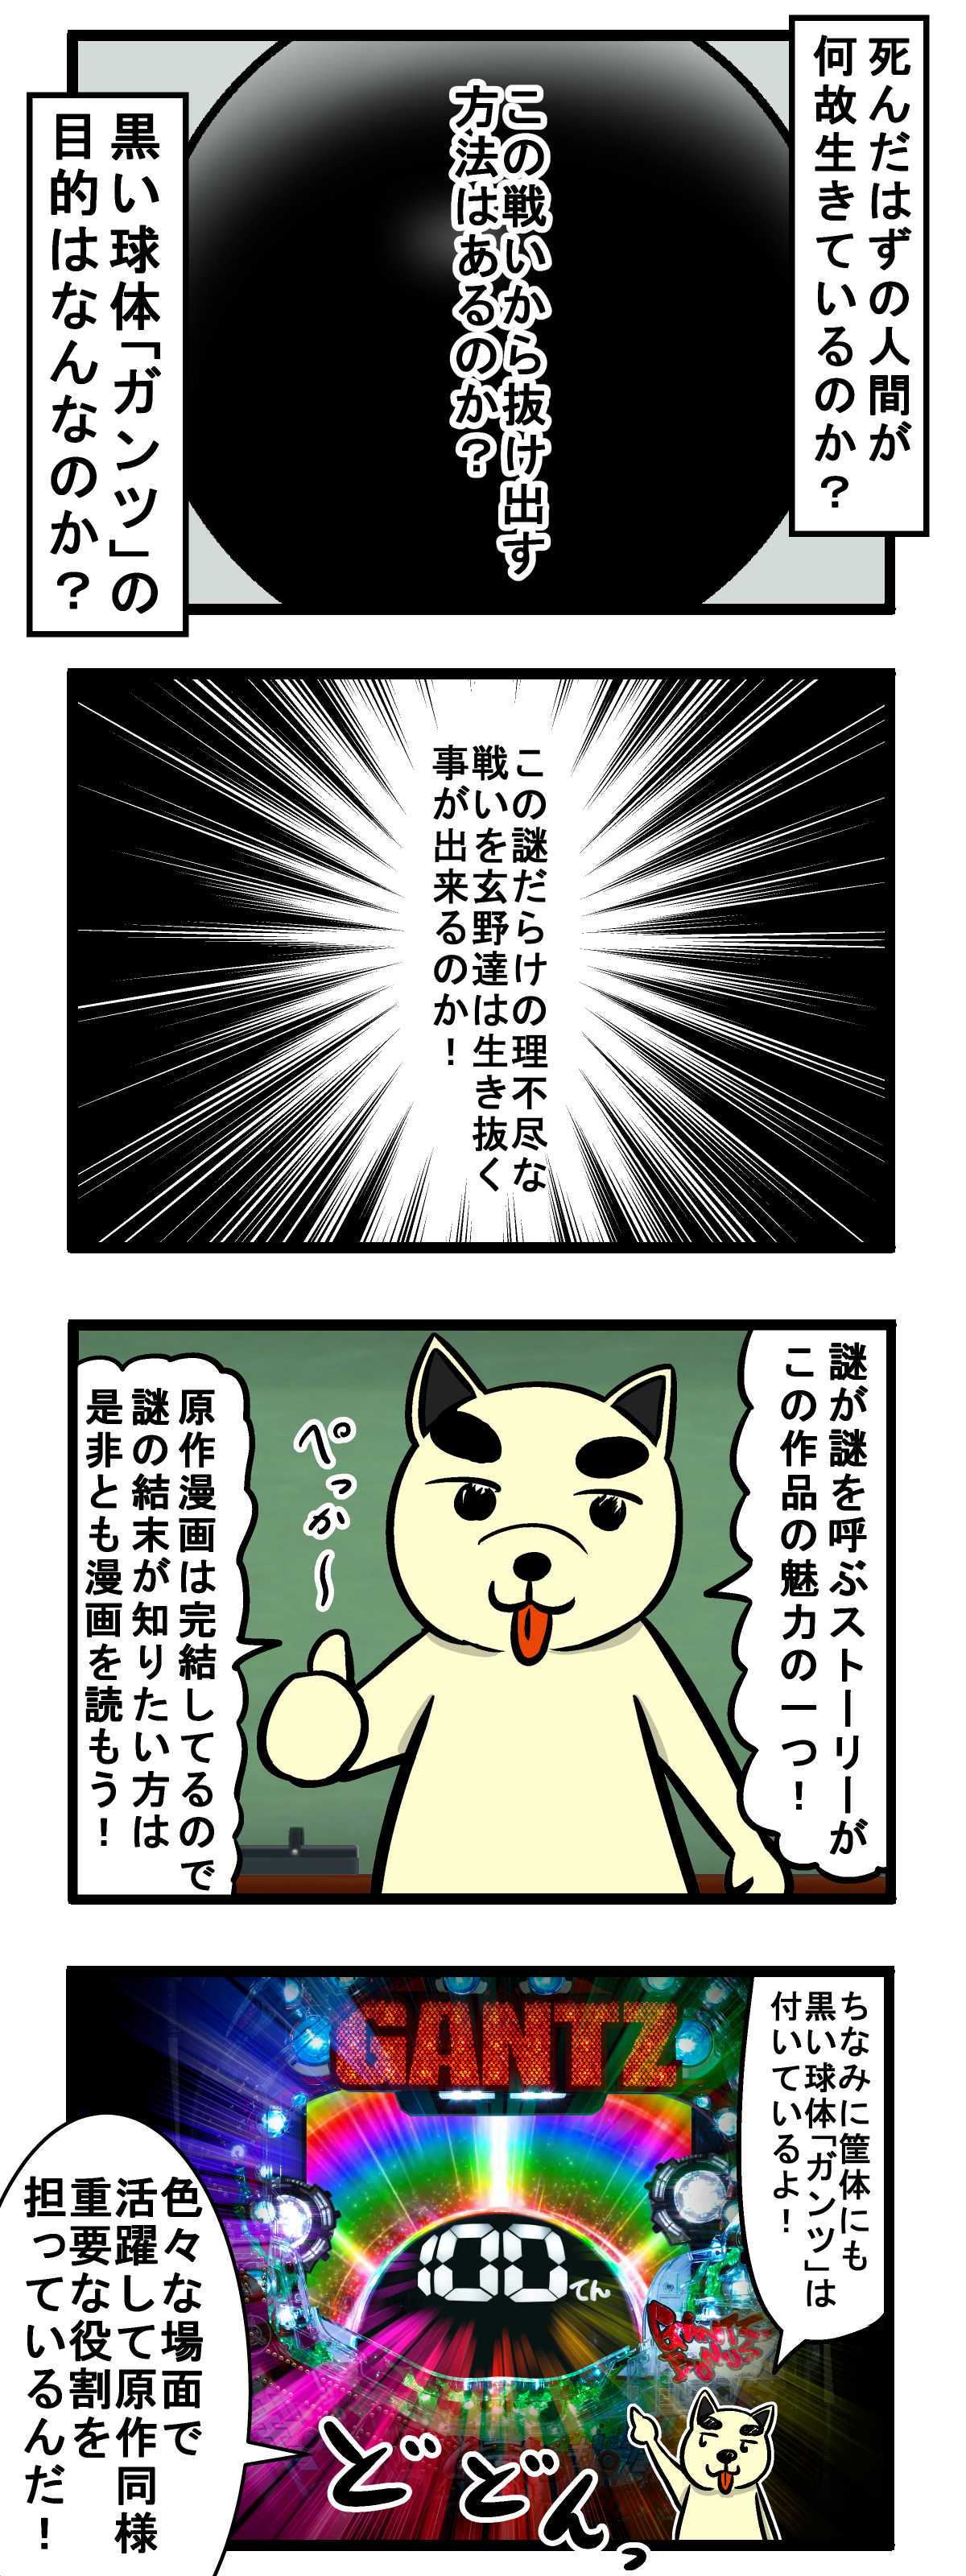 ぱちんこ Gantz ガンツ 特集 パチ7コミック犬 いぬ の原作講座